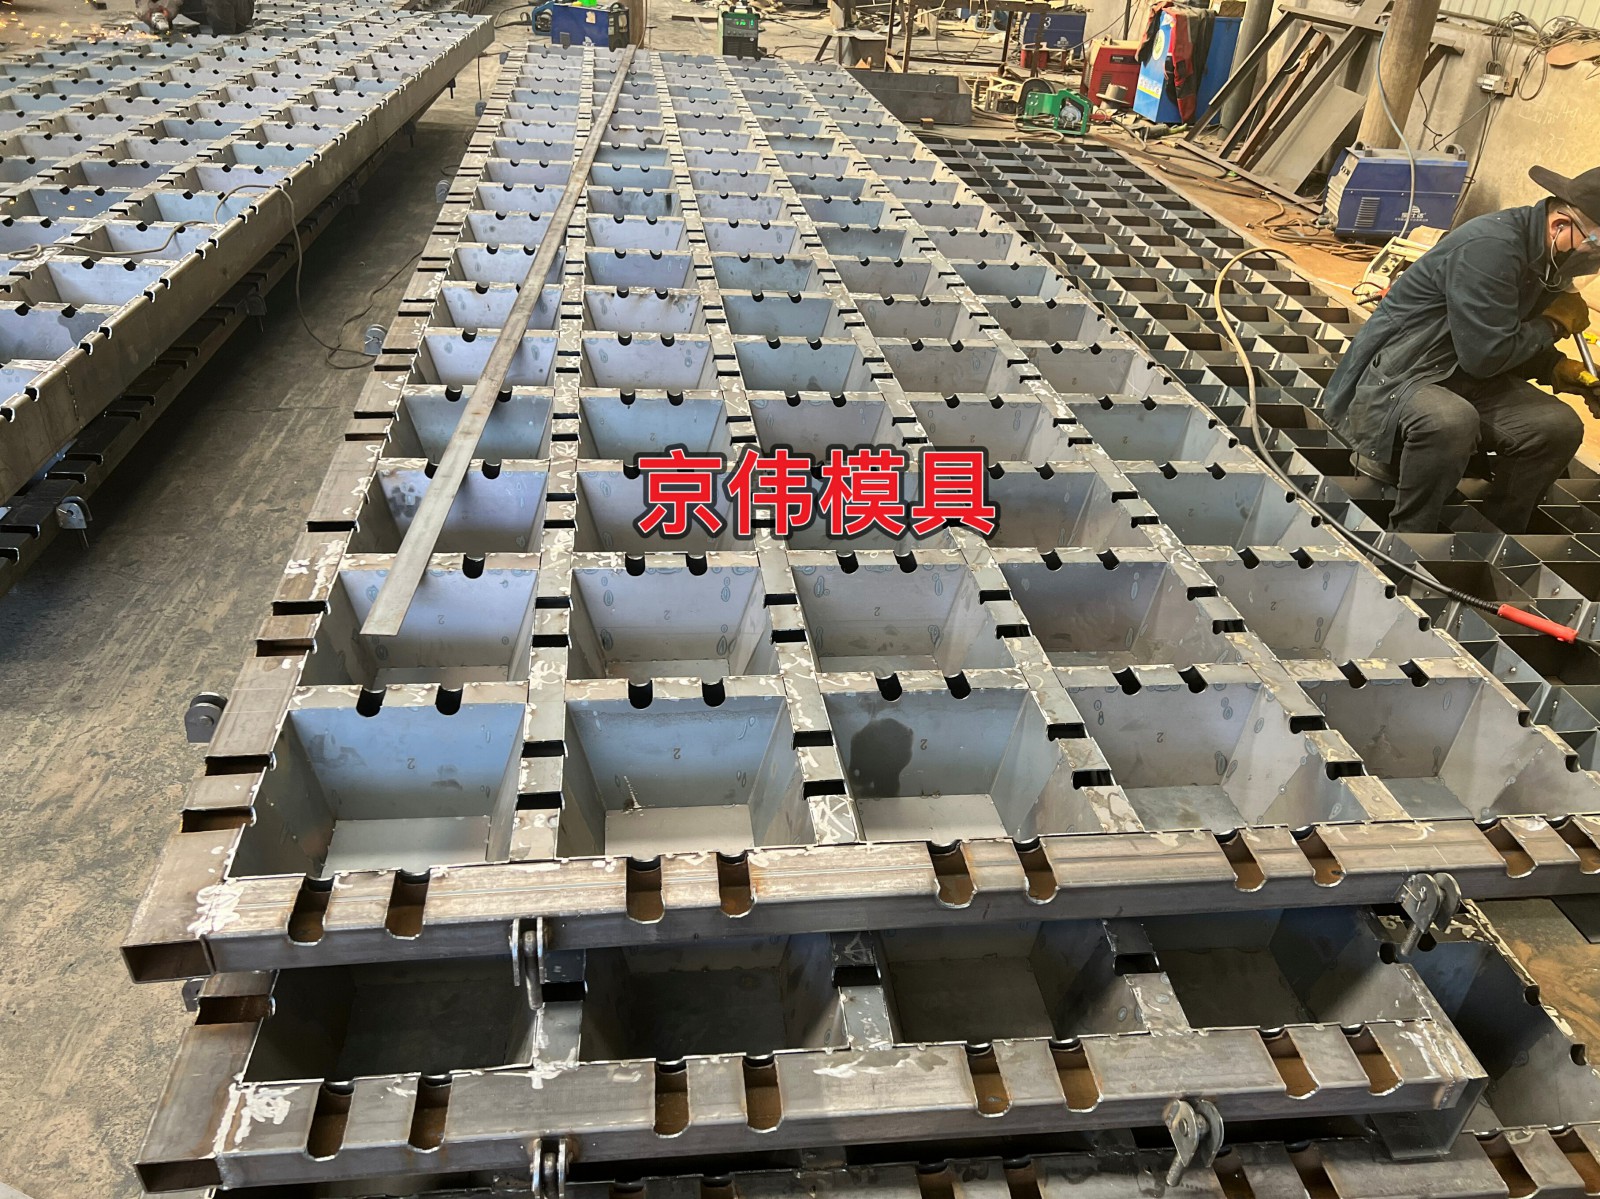 海底电缆保护防护的多功能联锁排模具单元块模具生产厂家京伟